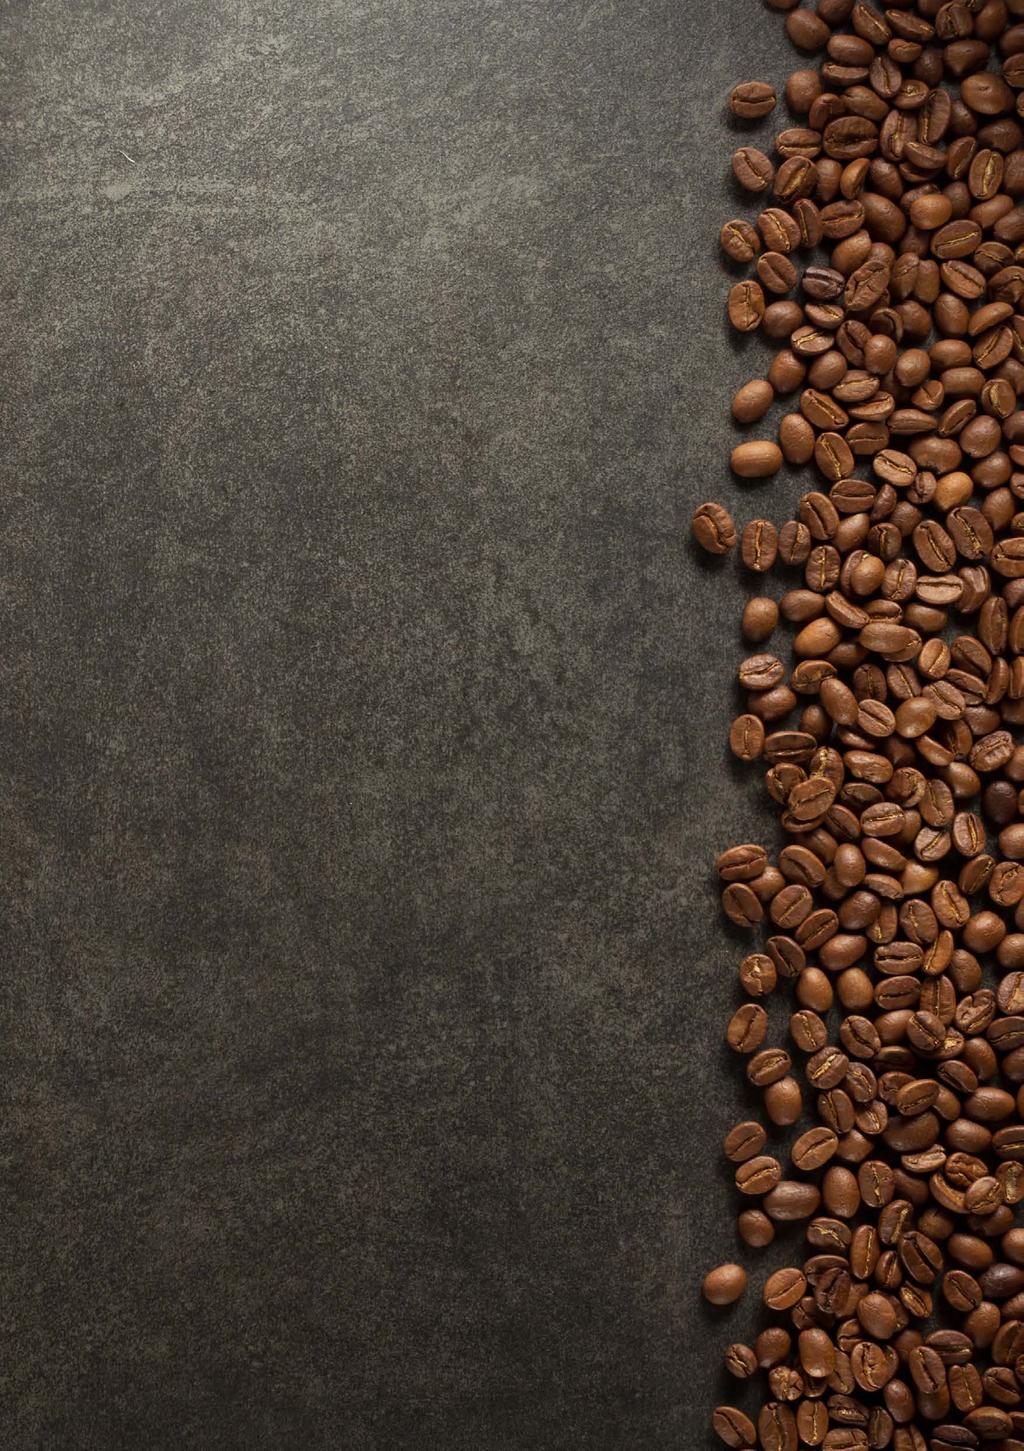 KOFFIE Koffie Versgebrand door Maison Blanche Dael 2,10 Espresso Kort en pittig Italiaans 2,10 Cappuccino Heerlijk klassiek!